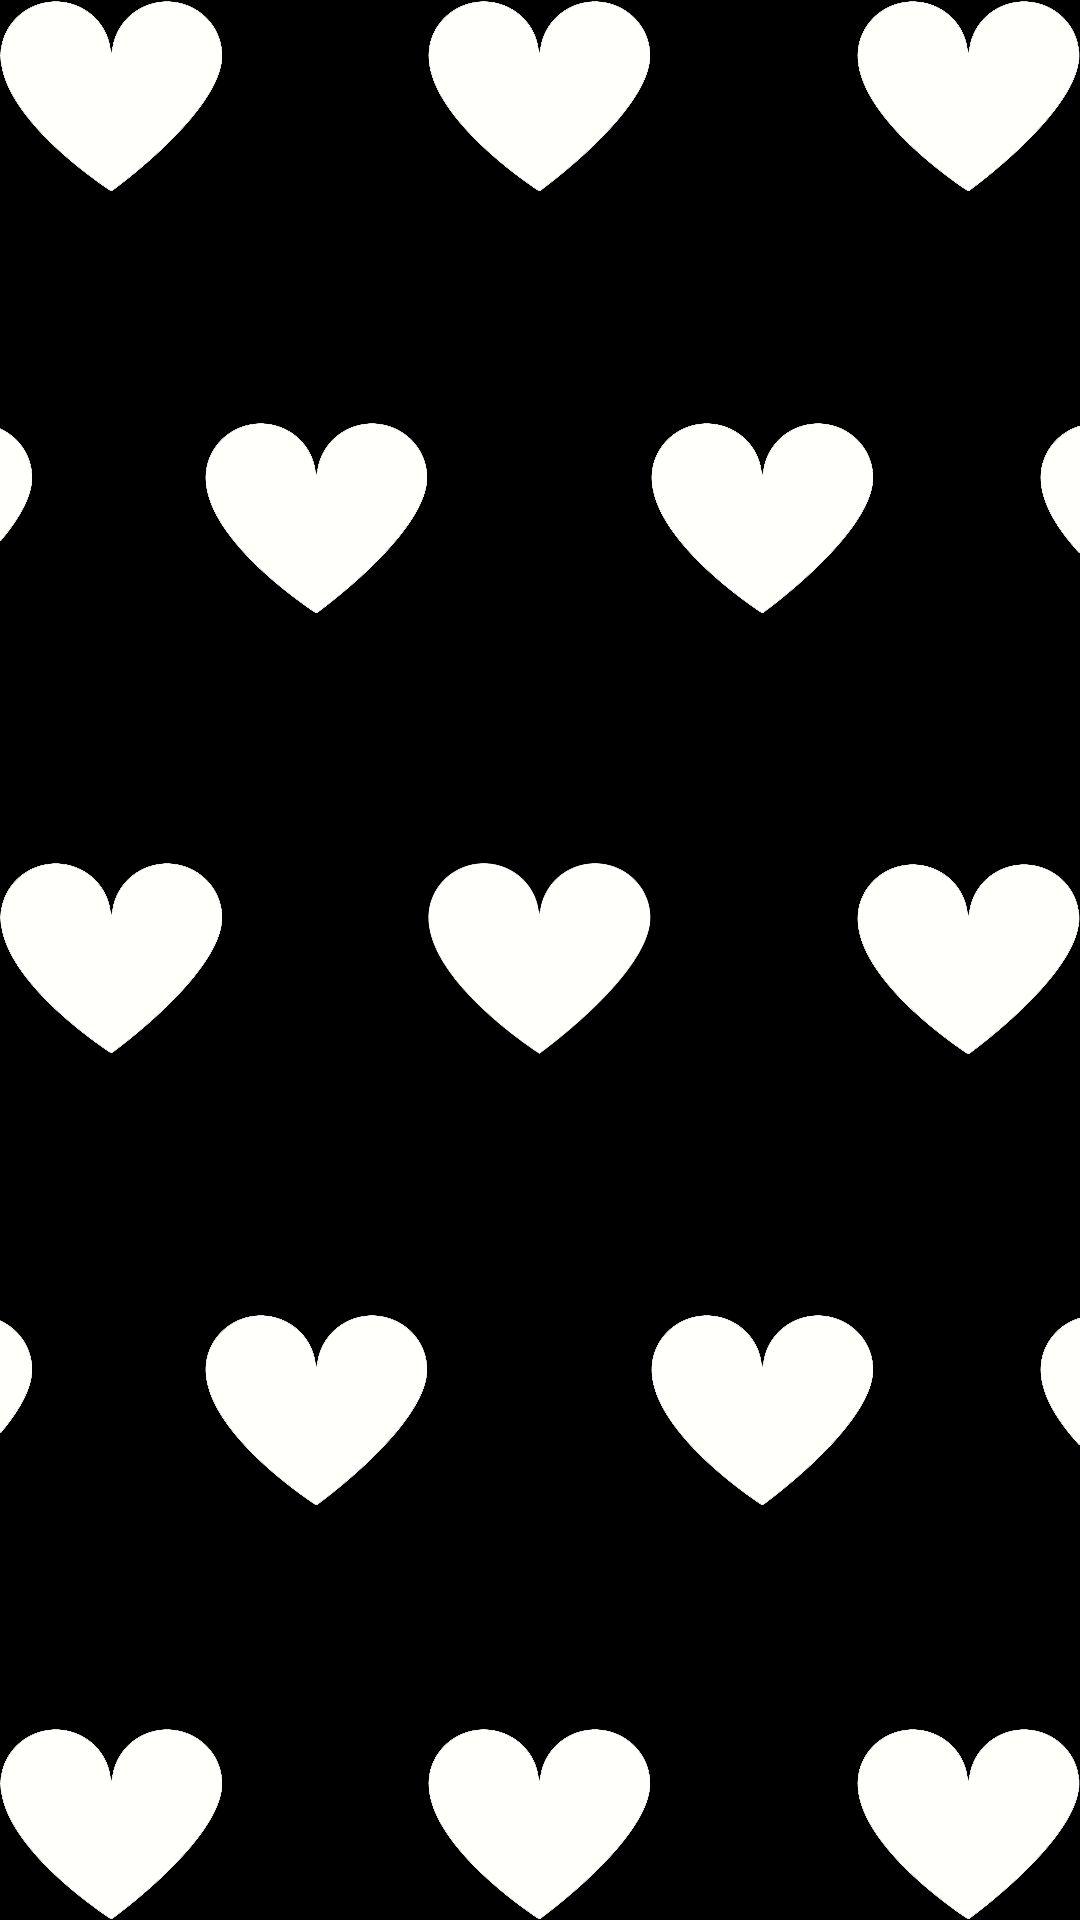 Hearts. Heart wallpaper, Heart iphone wallpaper, iPhone wallpaper